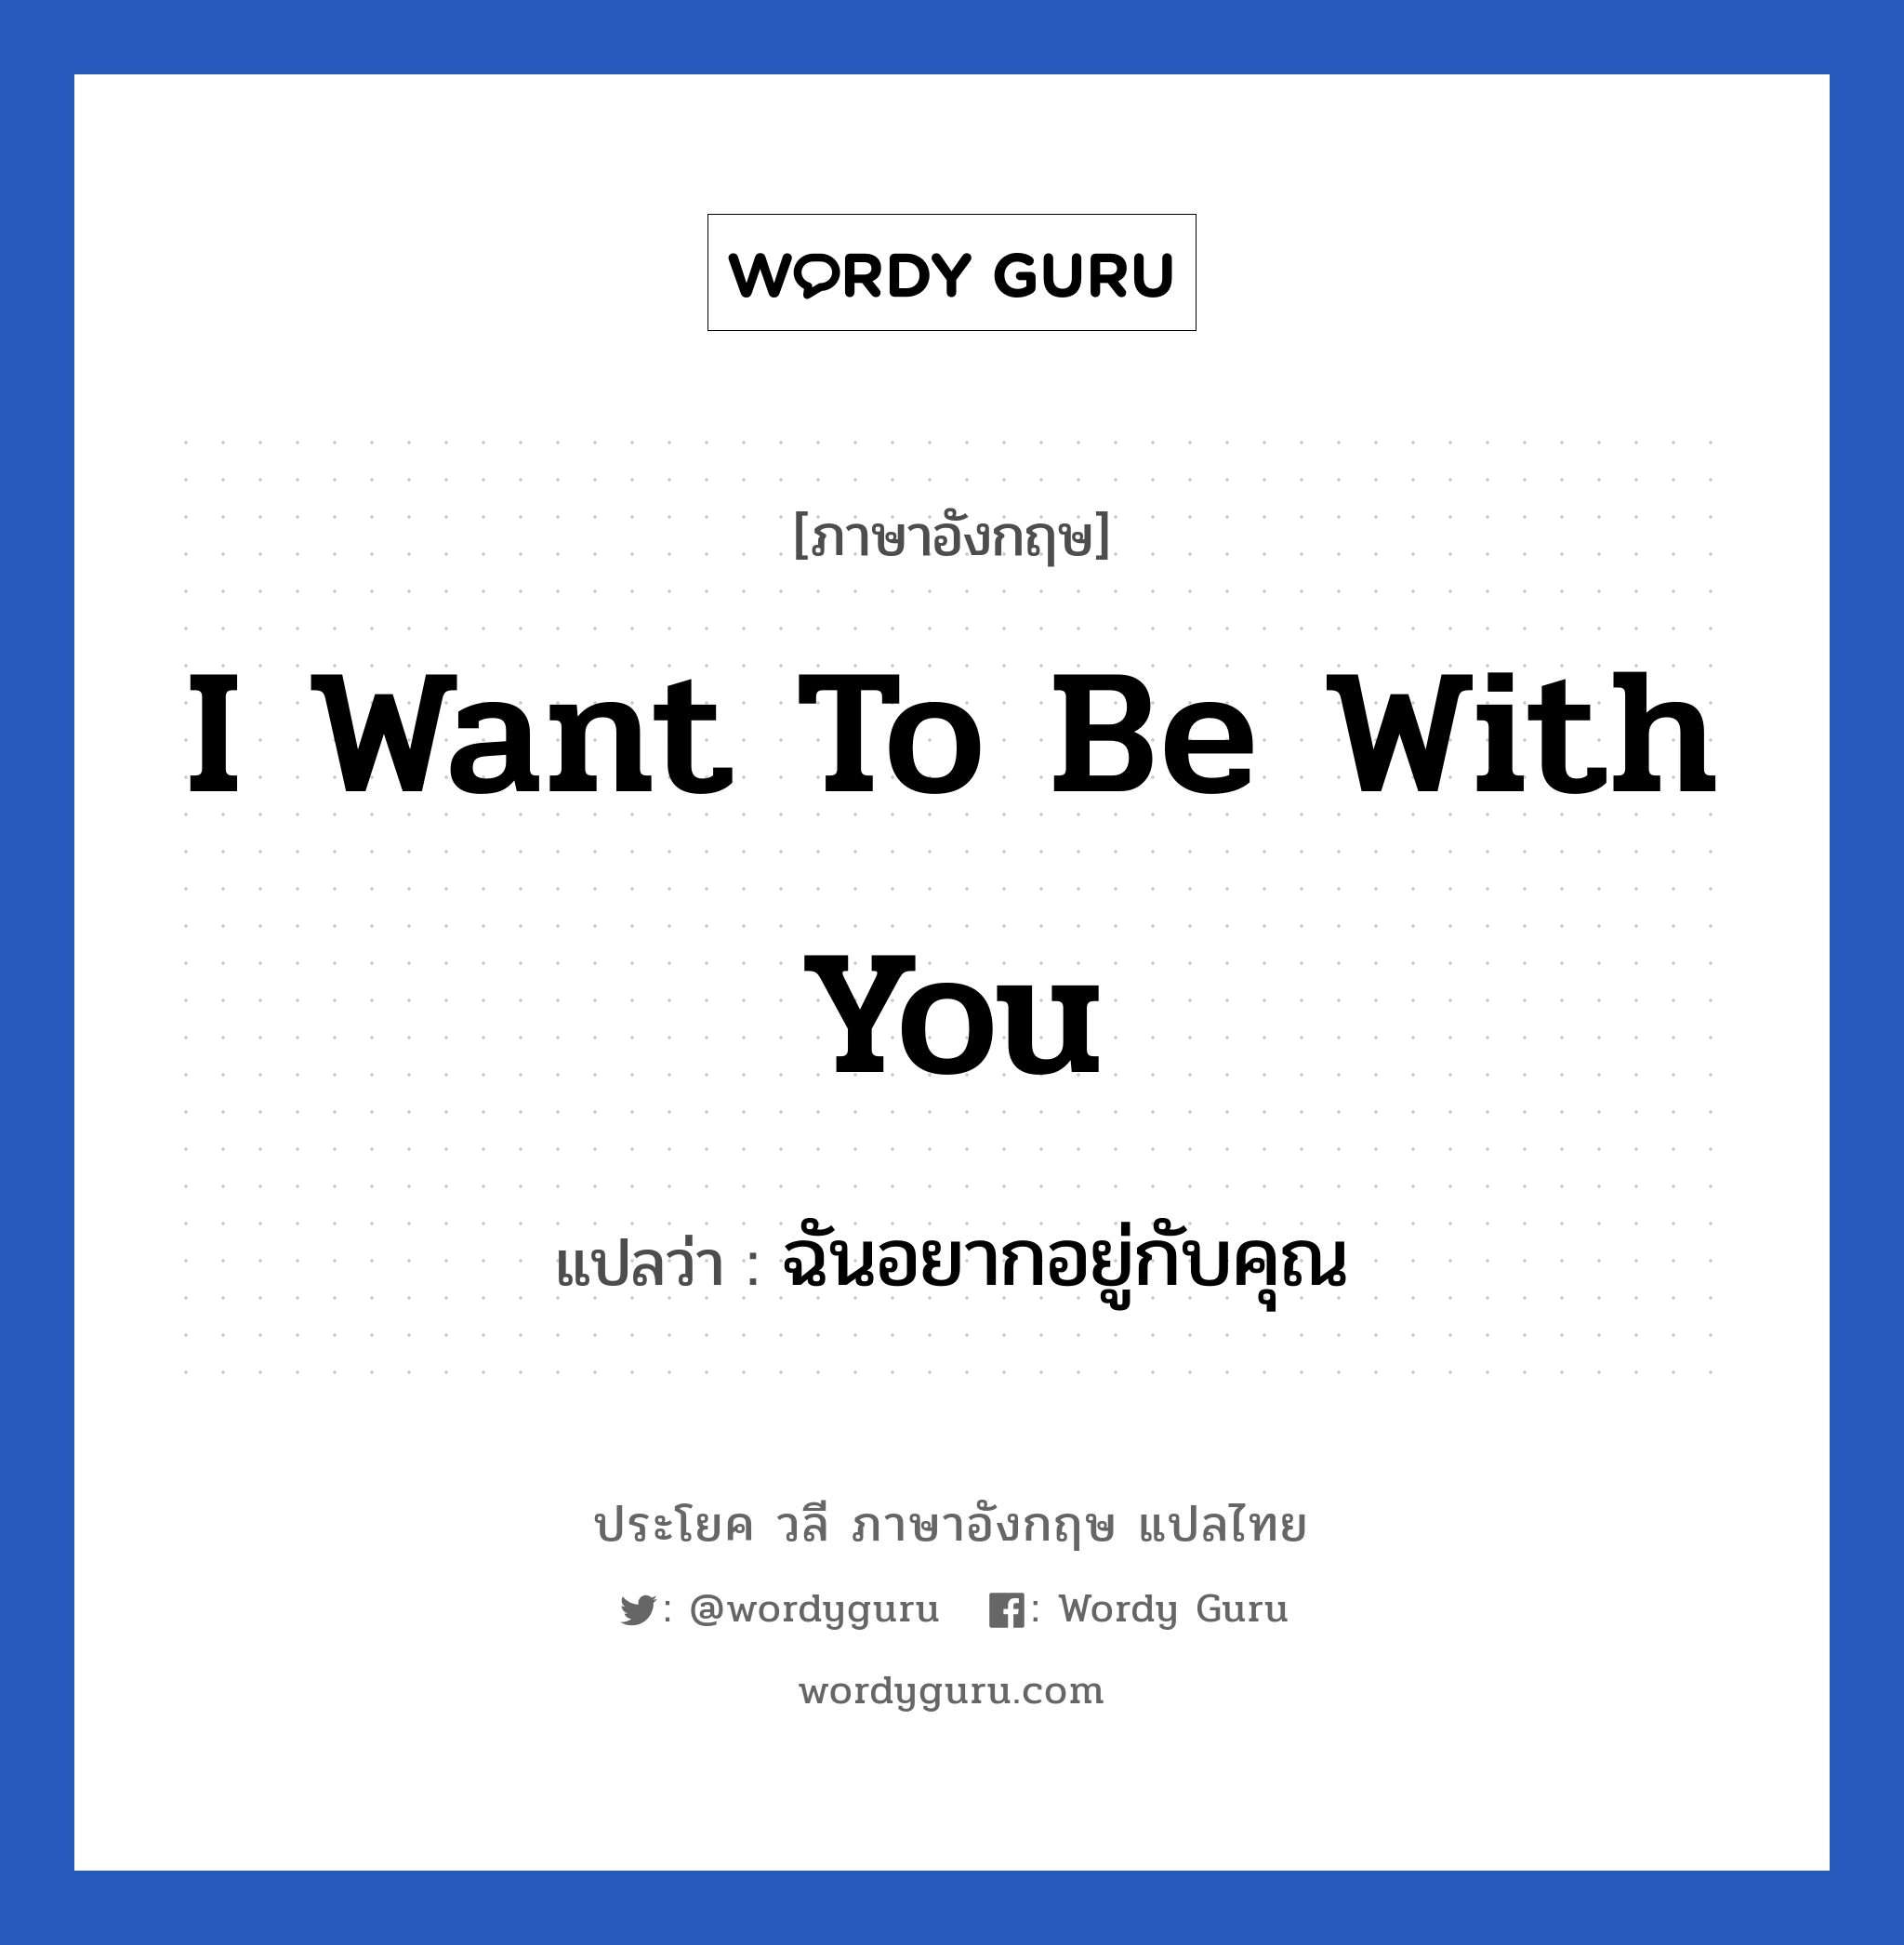 I want to be with you แปลว่า? เป็นประโยคในกลุ่มประเภท ความรัก, วลีภาษาอังกฤษ I want to be with you แปลว่า ฉันอยากอยู่กับคุณ หมวด ความรัก